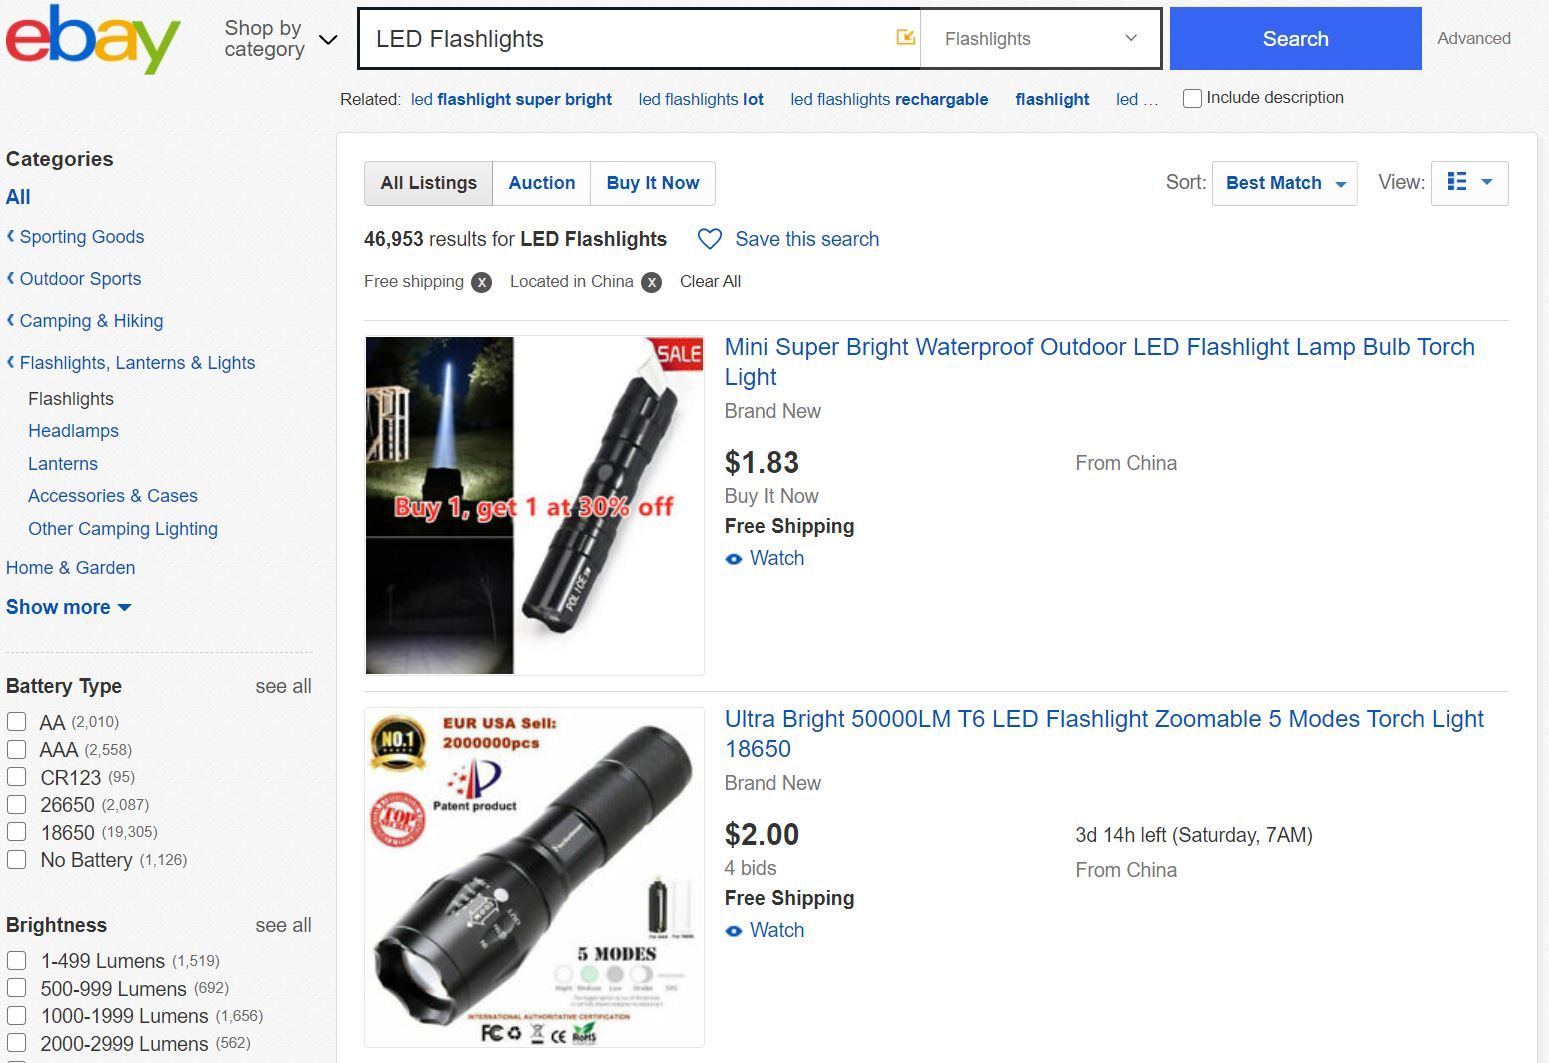 ebay deals china seller - 6 consigli comprovati per trovare ottimi affari su eBay